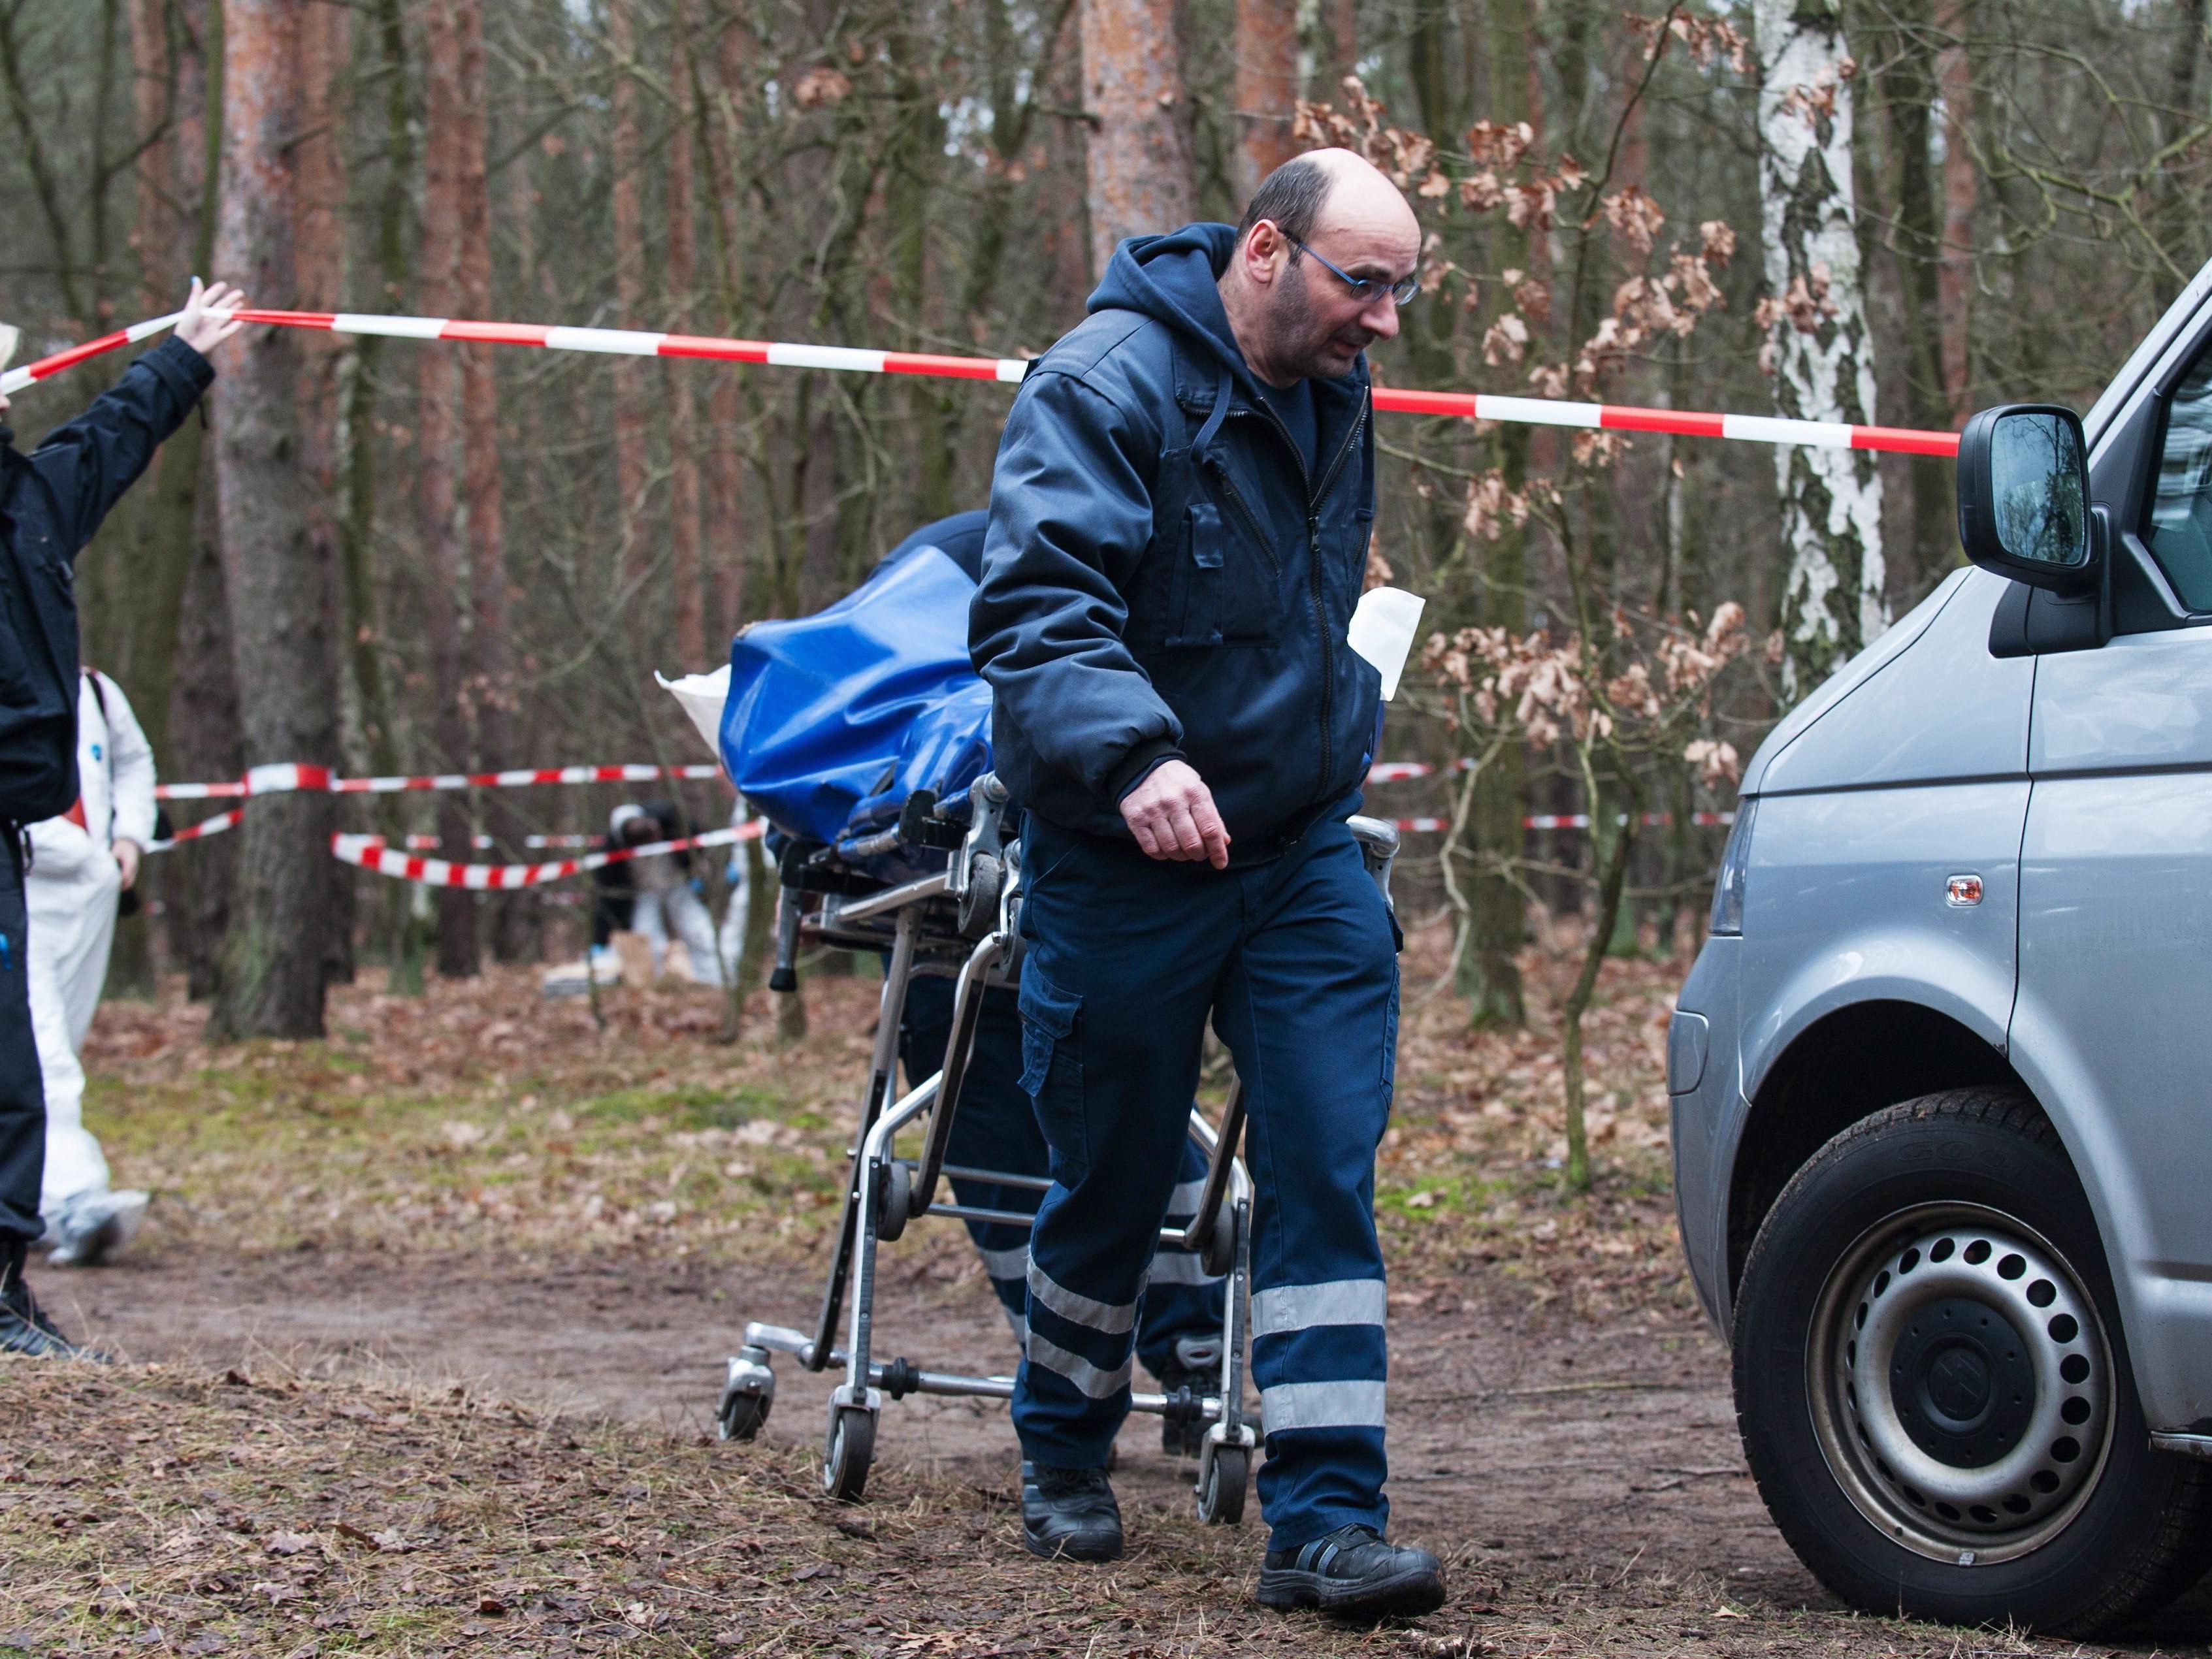 Berliner Polizei fasst zwei Verdächtige - Grausige Einzelheiten des Falls werden bekannt.